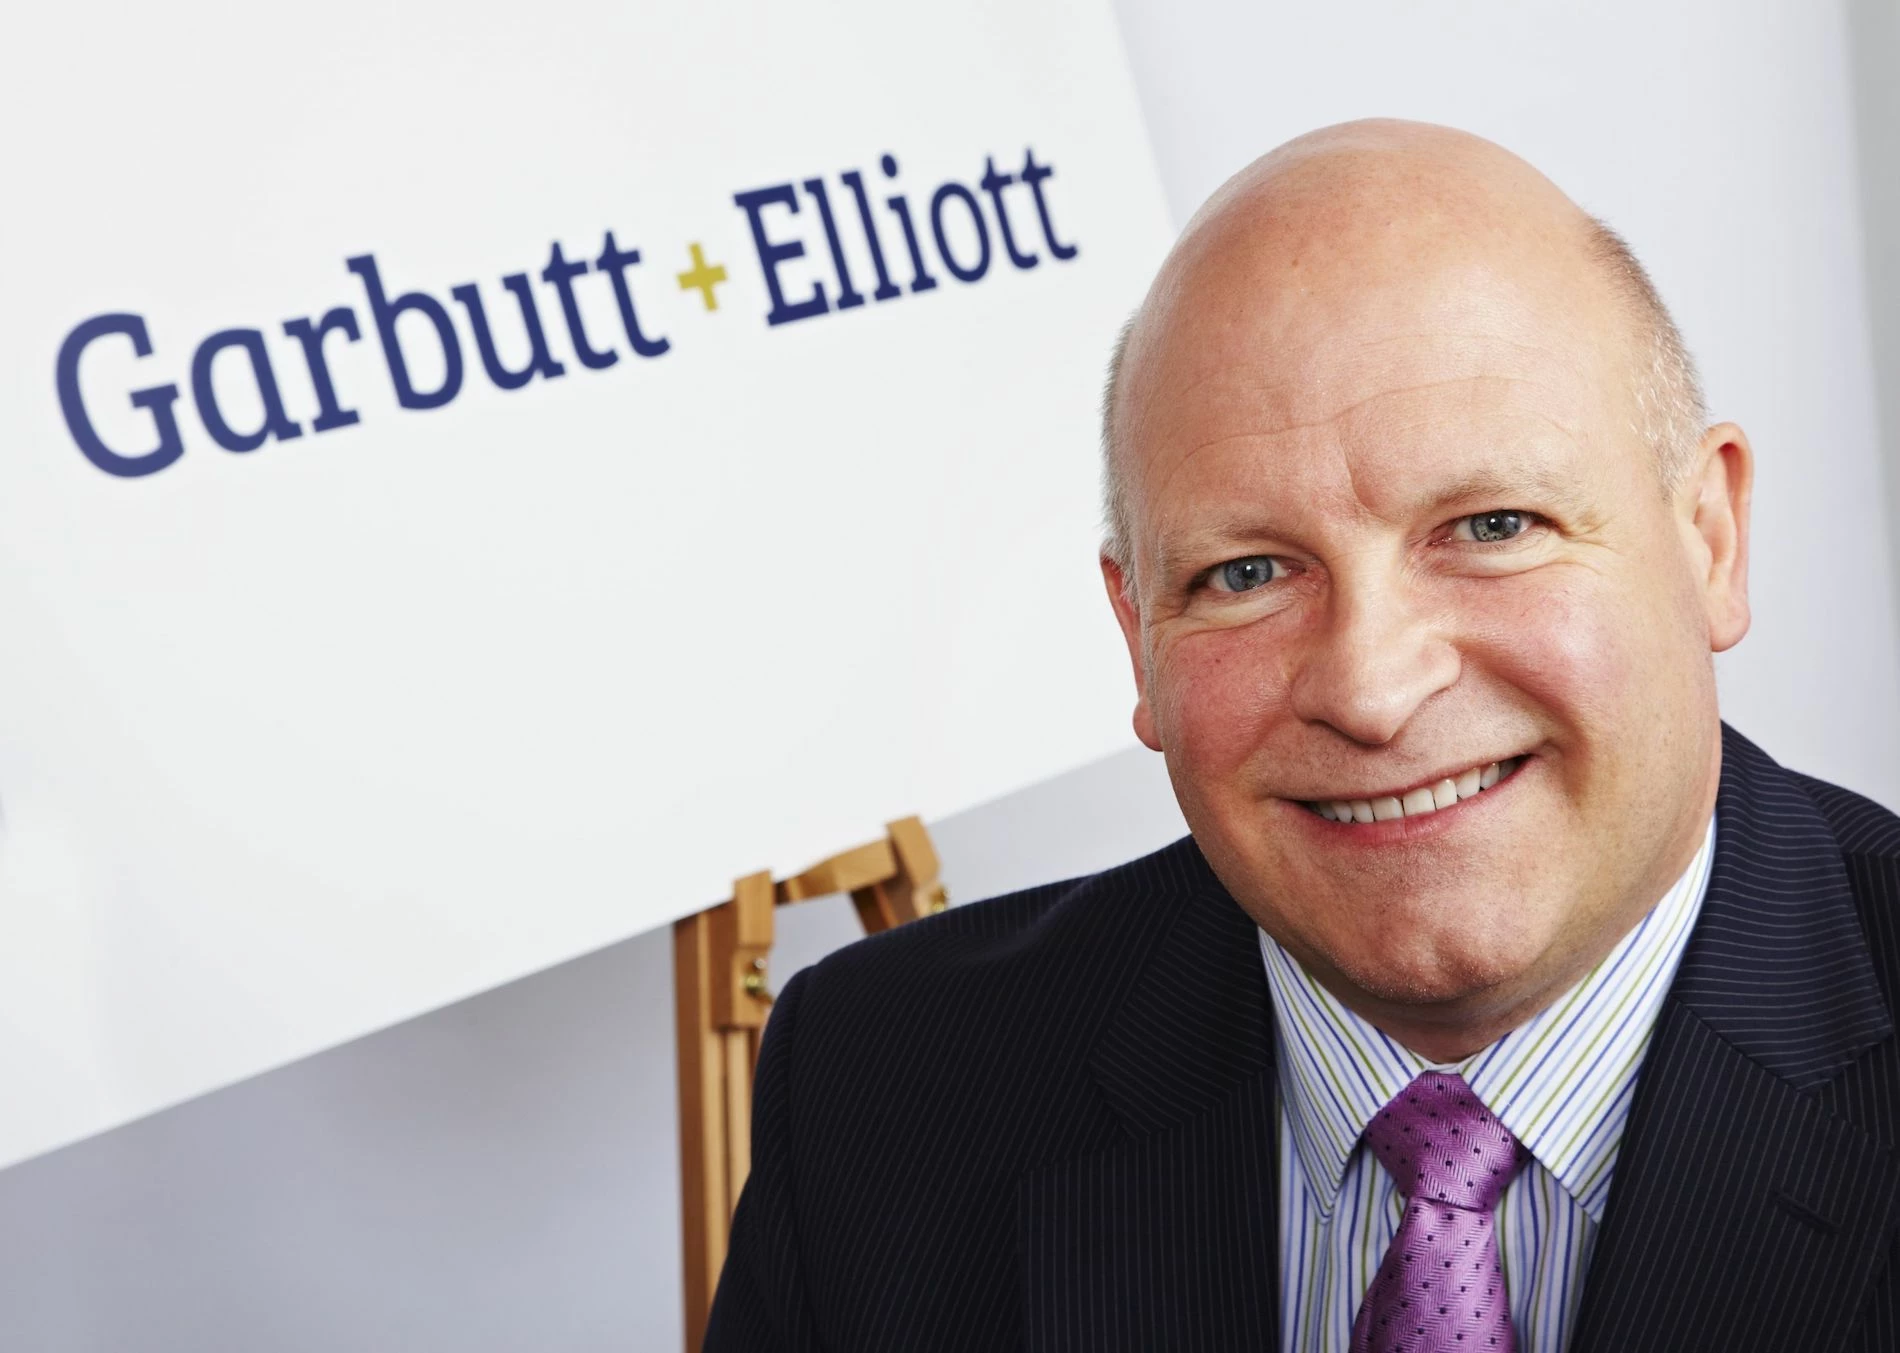  Garbutt + Elliott managing partner, Russell Turner